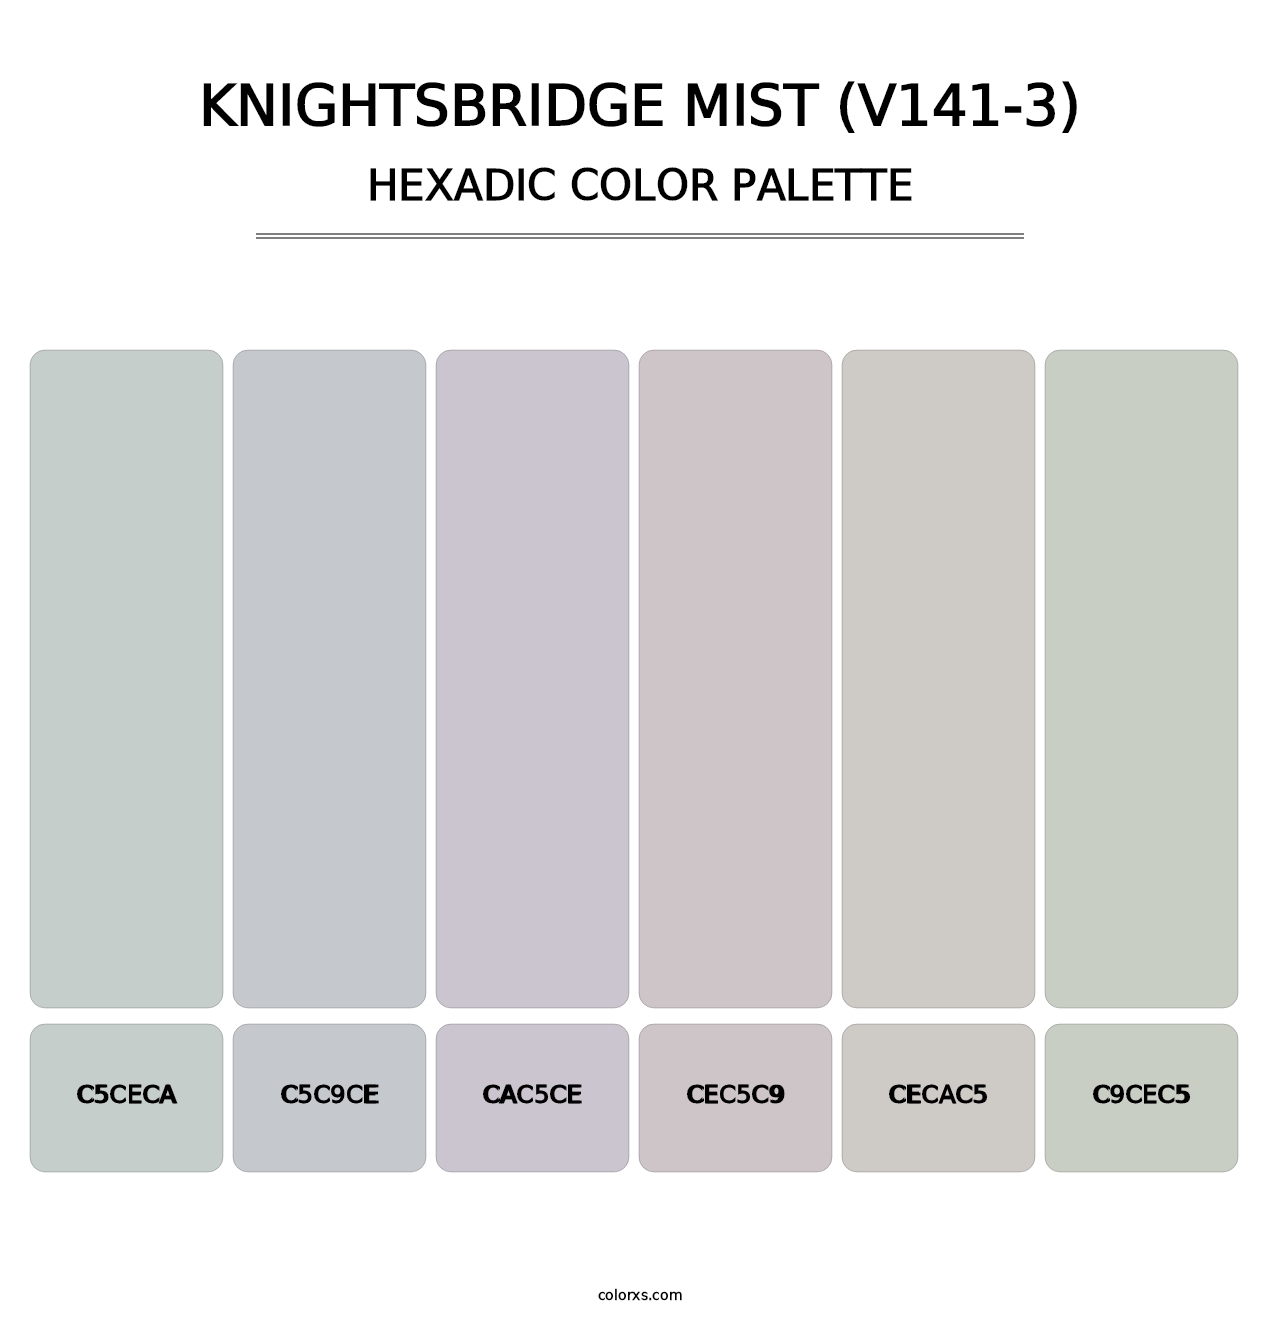 Knightsbridge Mist (V141-3) - Hexadic Color Palette